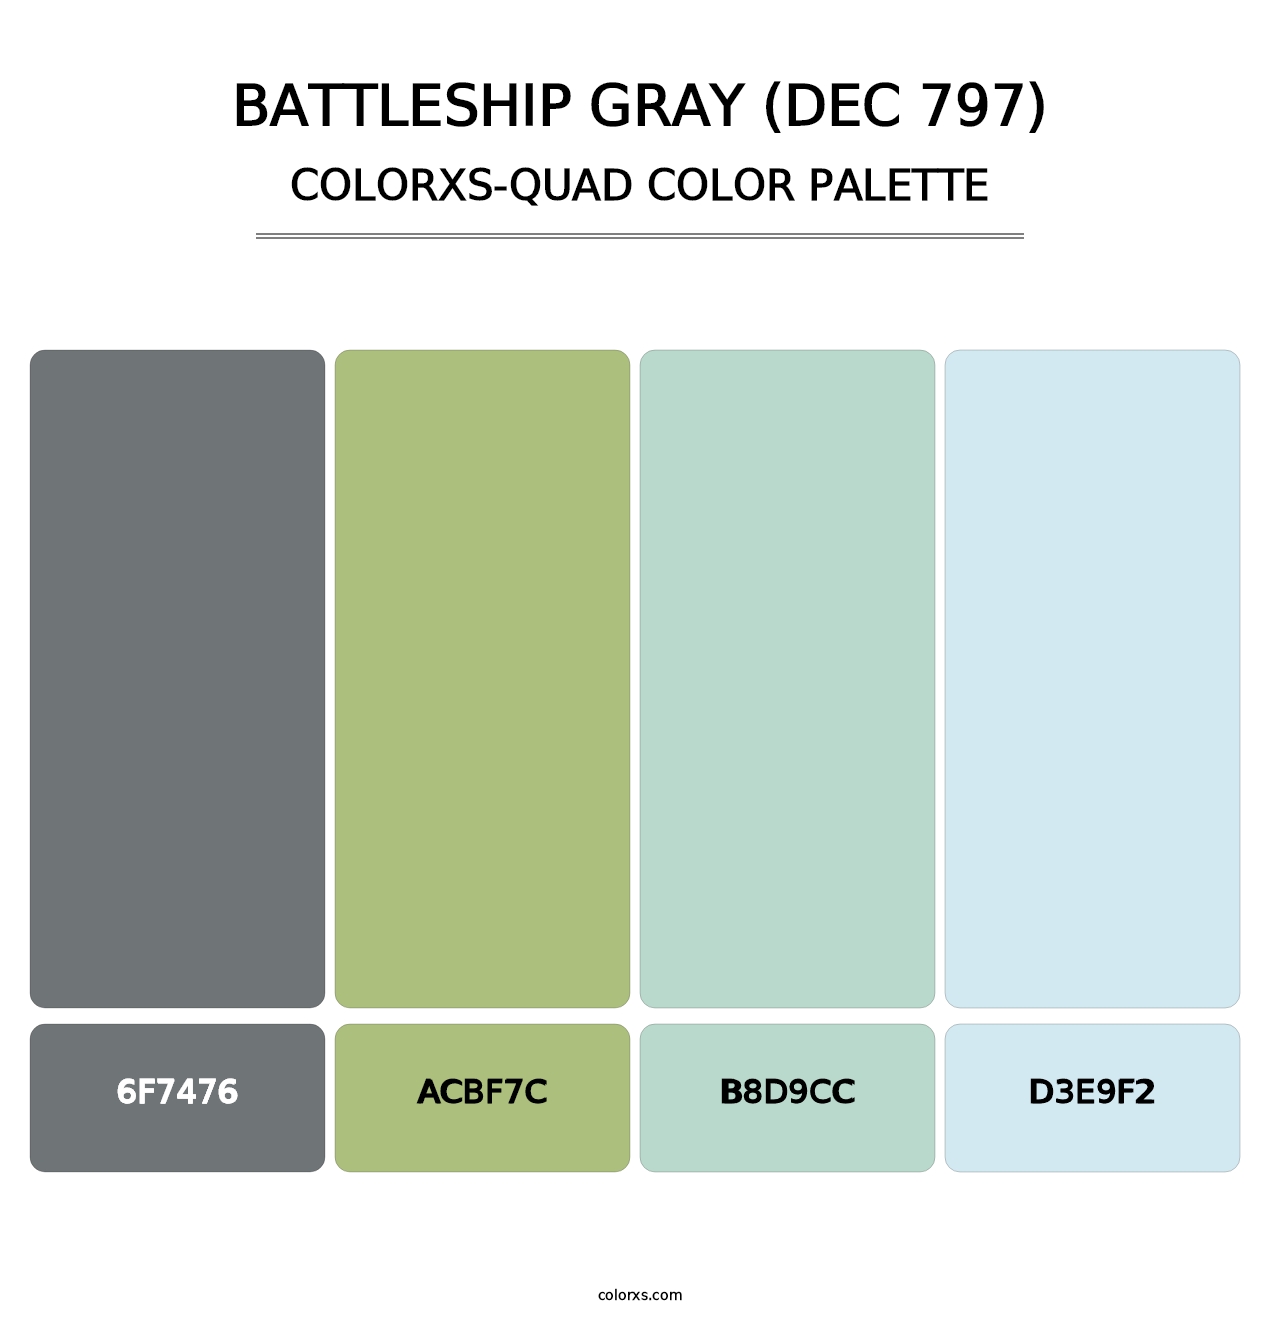 Battleship Gray (DEC 797) - Colorxs Quad Palette